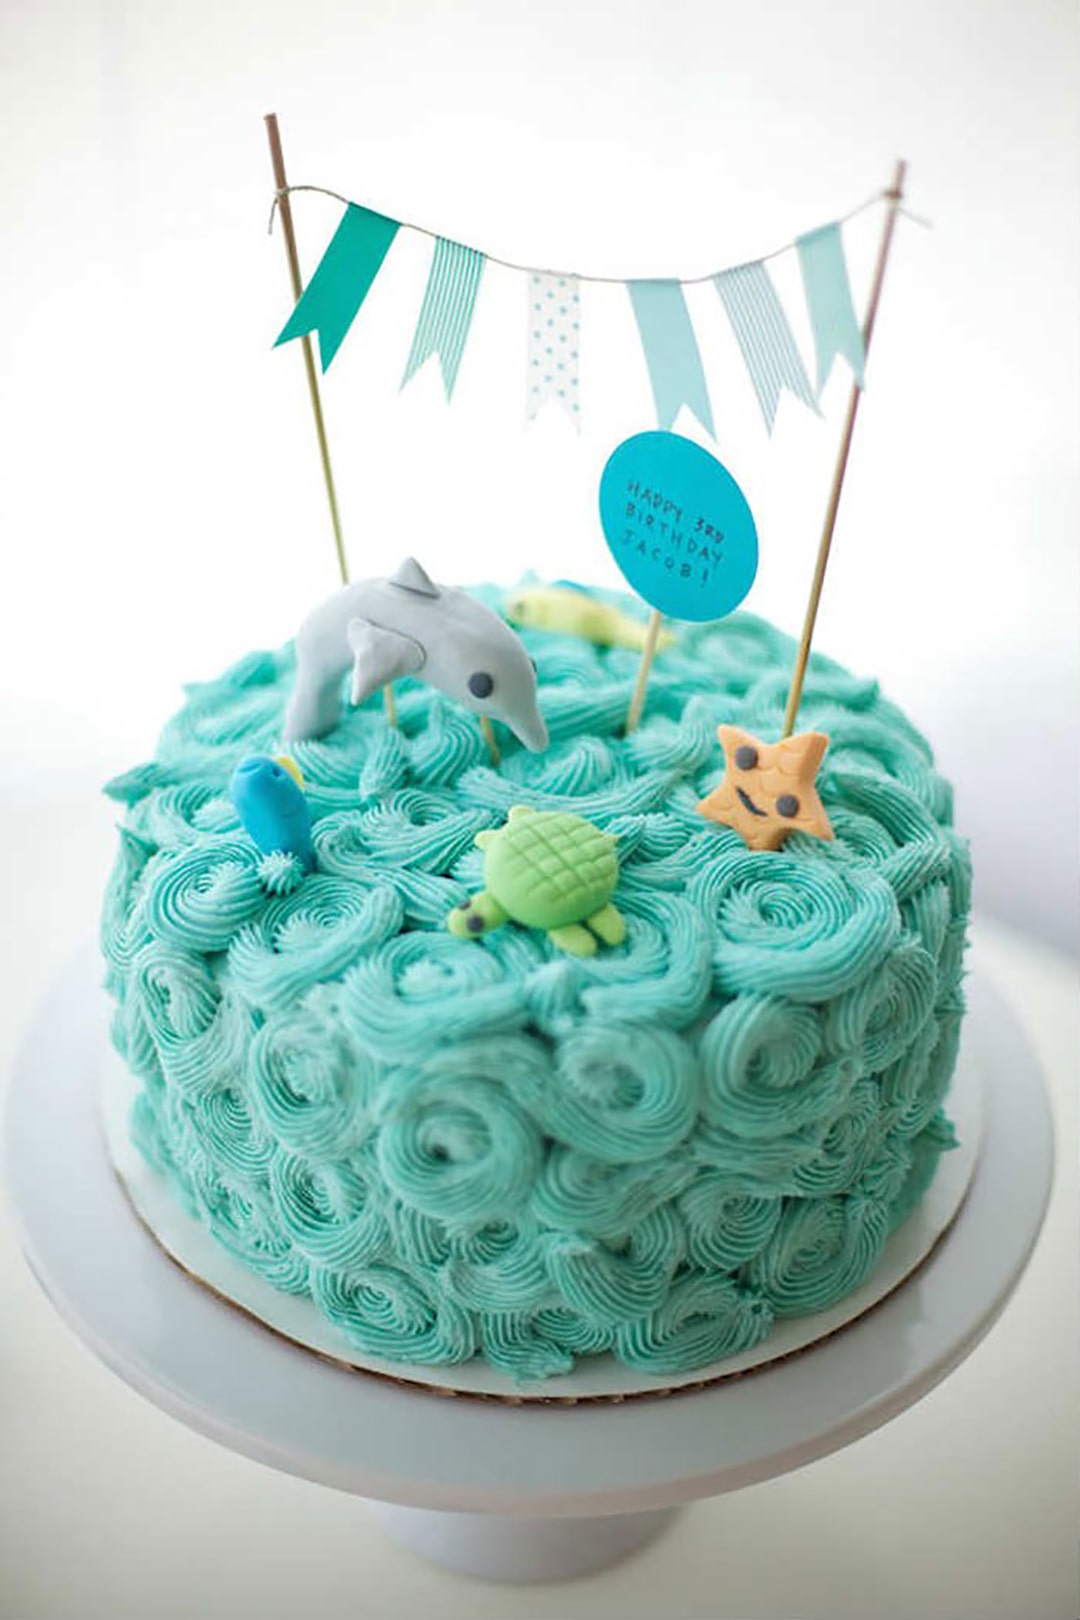 Bánh sinh nhật cho bạn bè tạo hình khủng long màu xanh (Mẫu 50955) -  FRIENDSHIP CAKES & GIFT